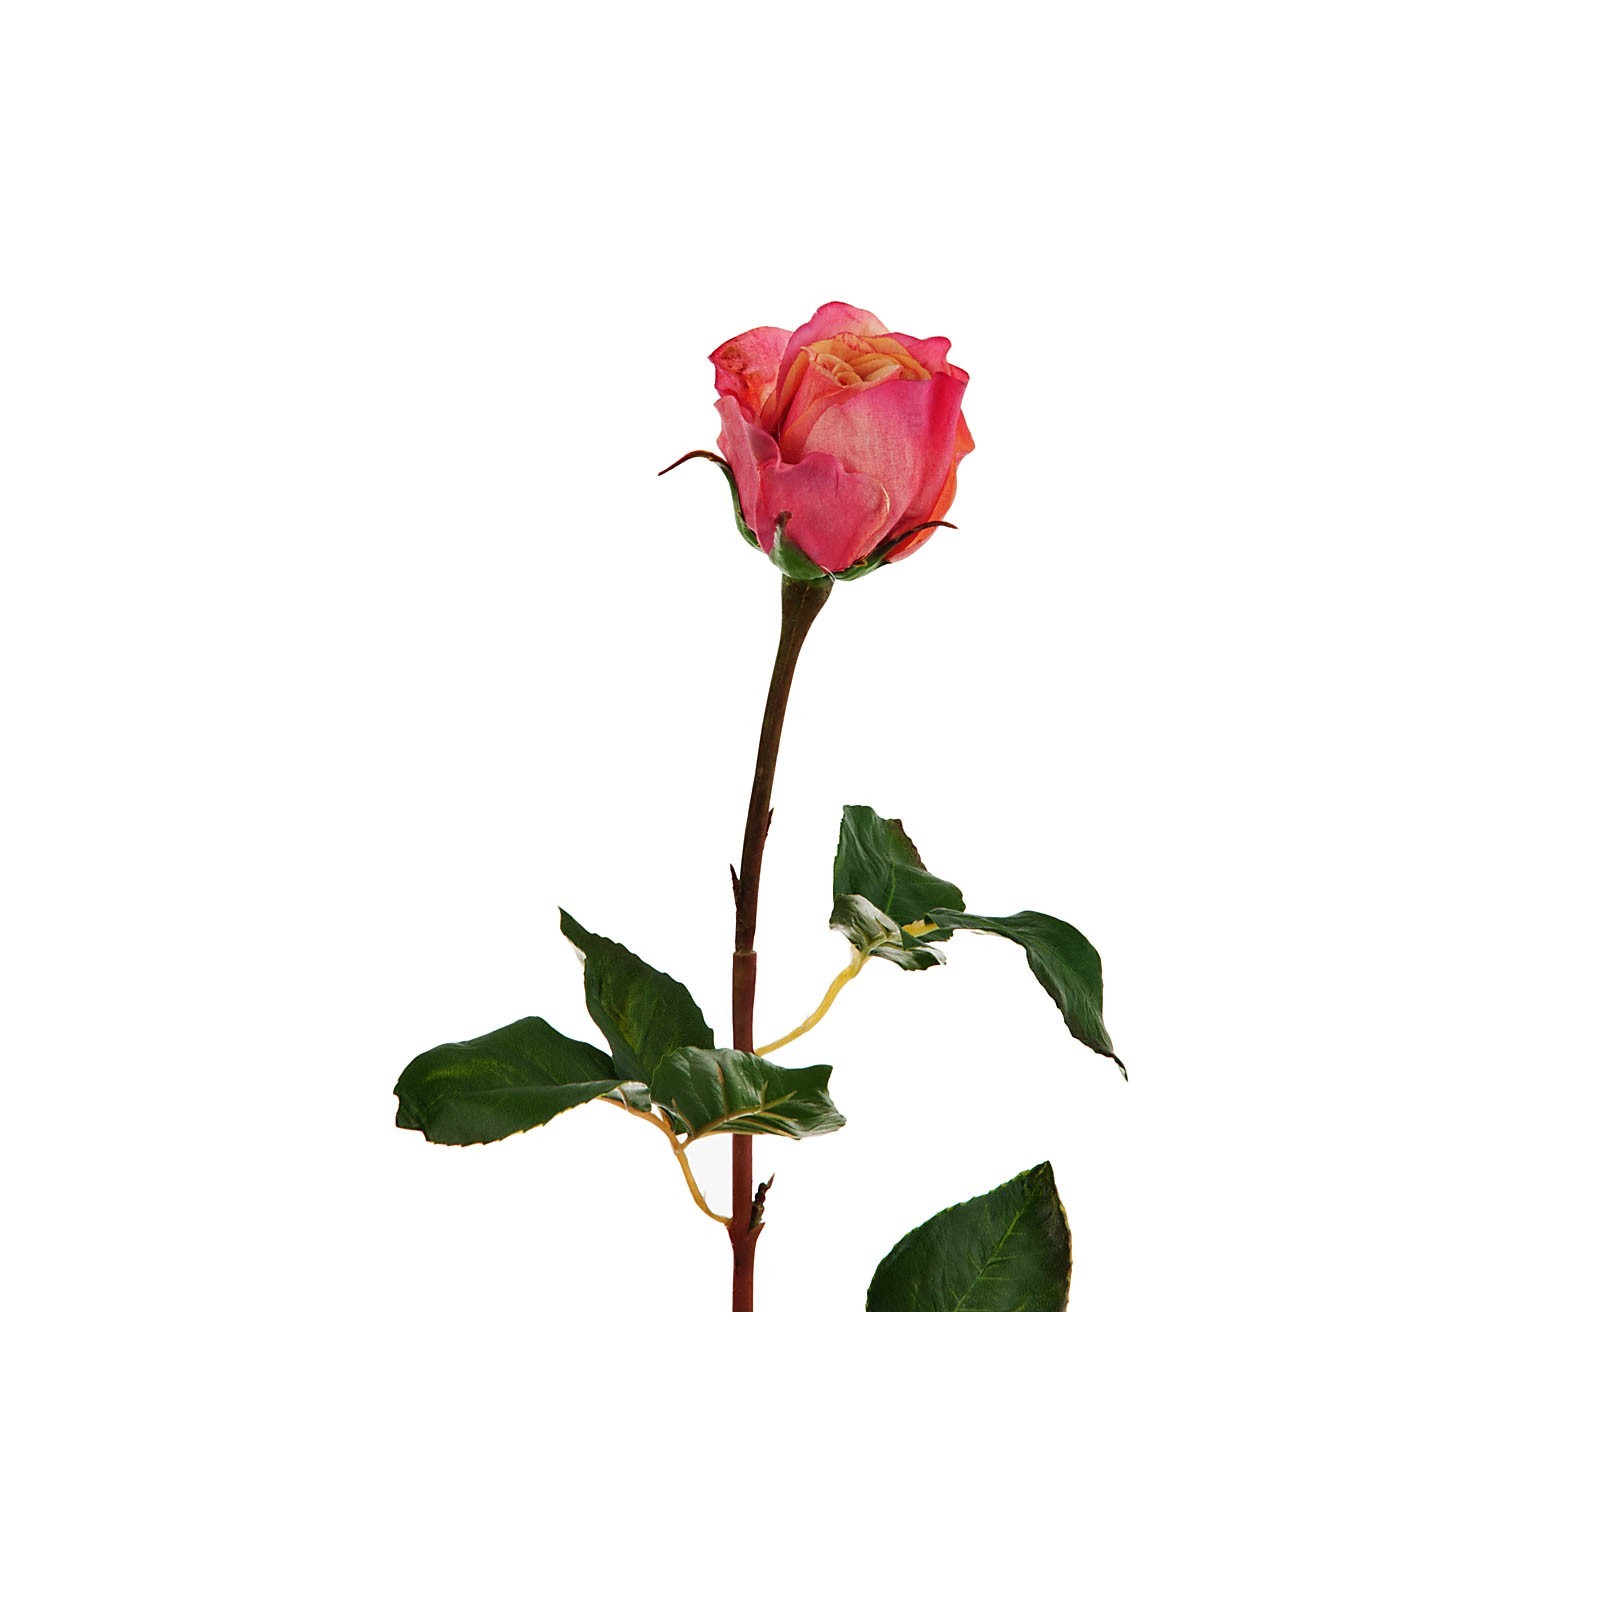 Flor Rosa durazno / rojo Haus